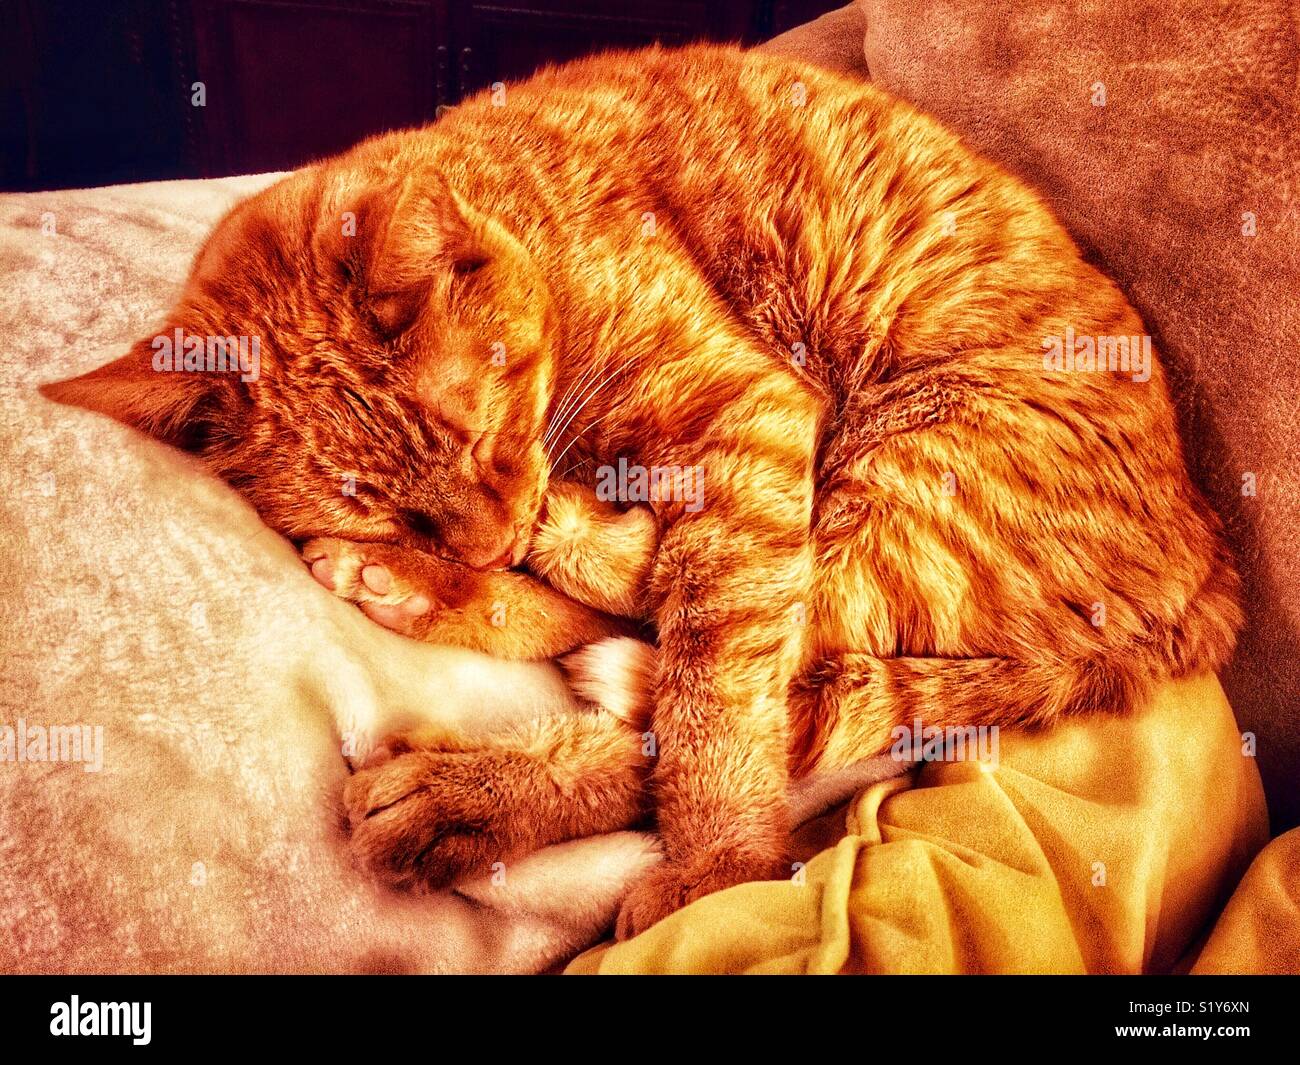 Sleeping cat orange sur la table à côté d'oreiller Banque D'Images